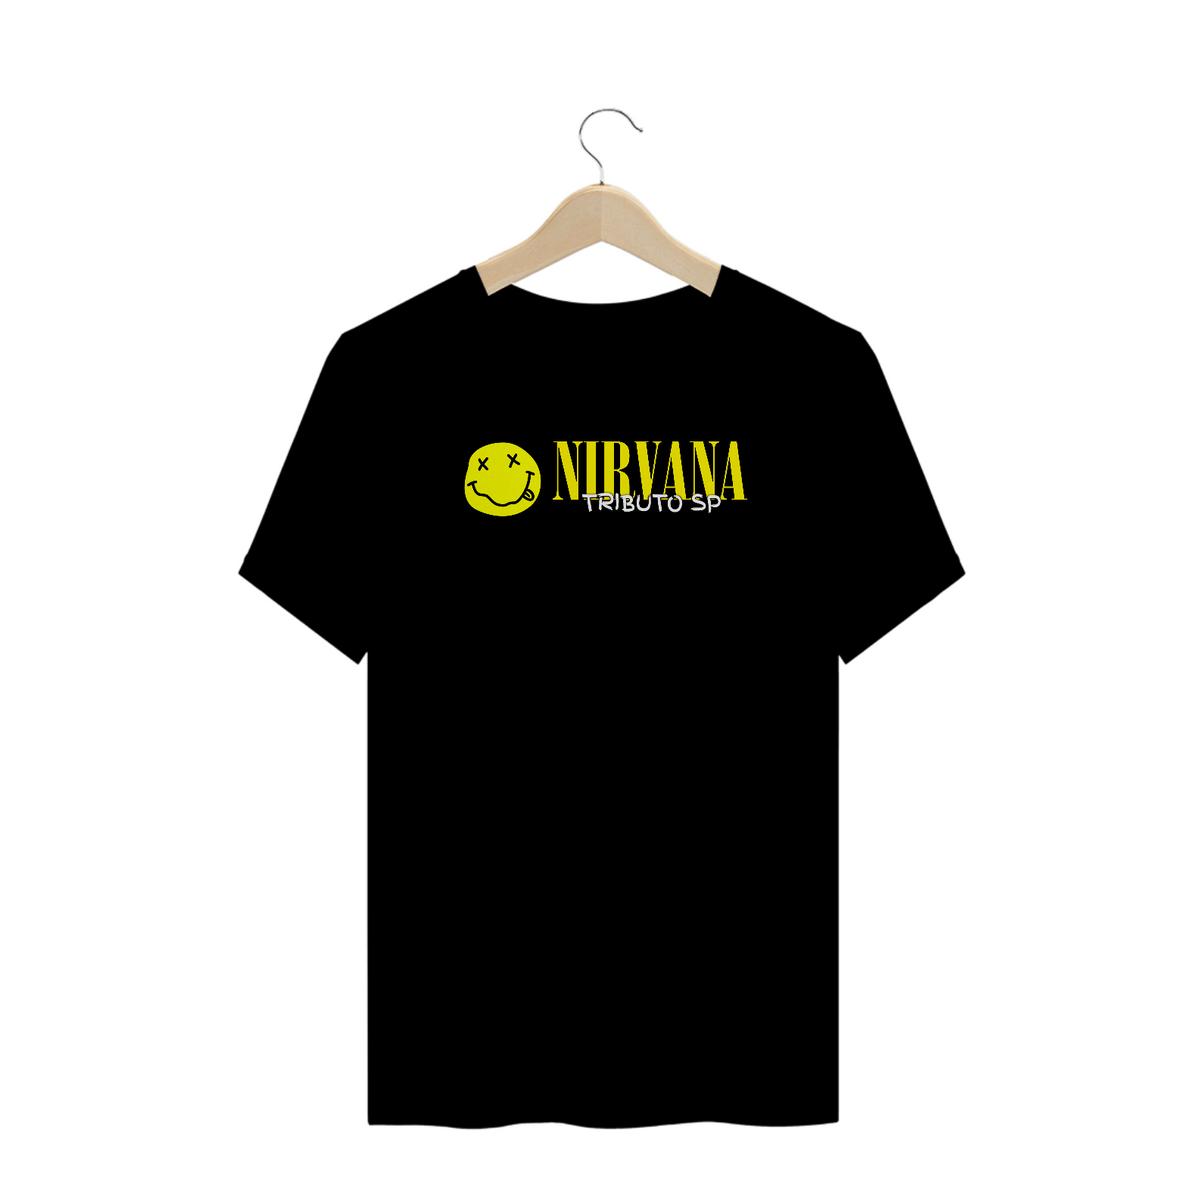 Nome do produto: Camiseta Plus Size -  Nirvana Tributo SP